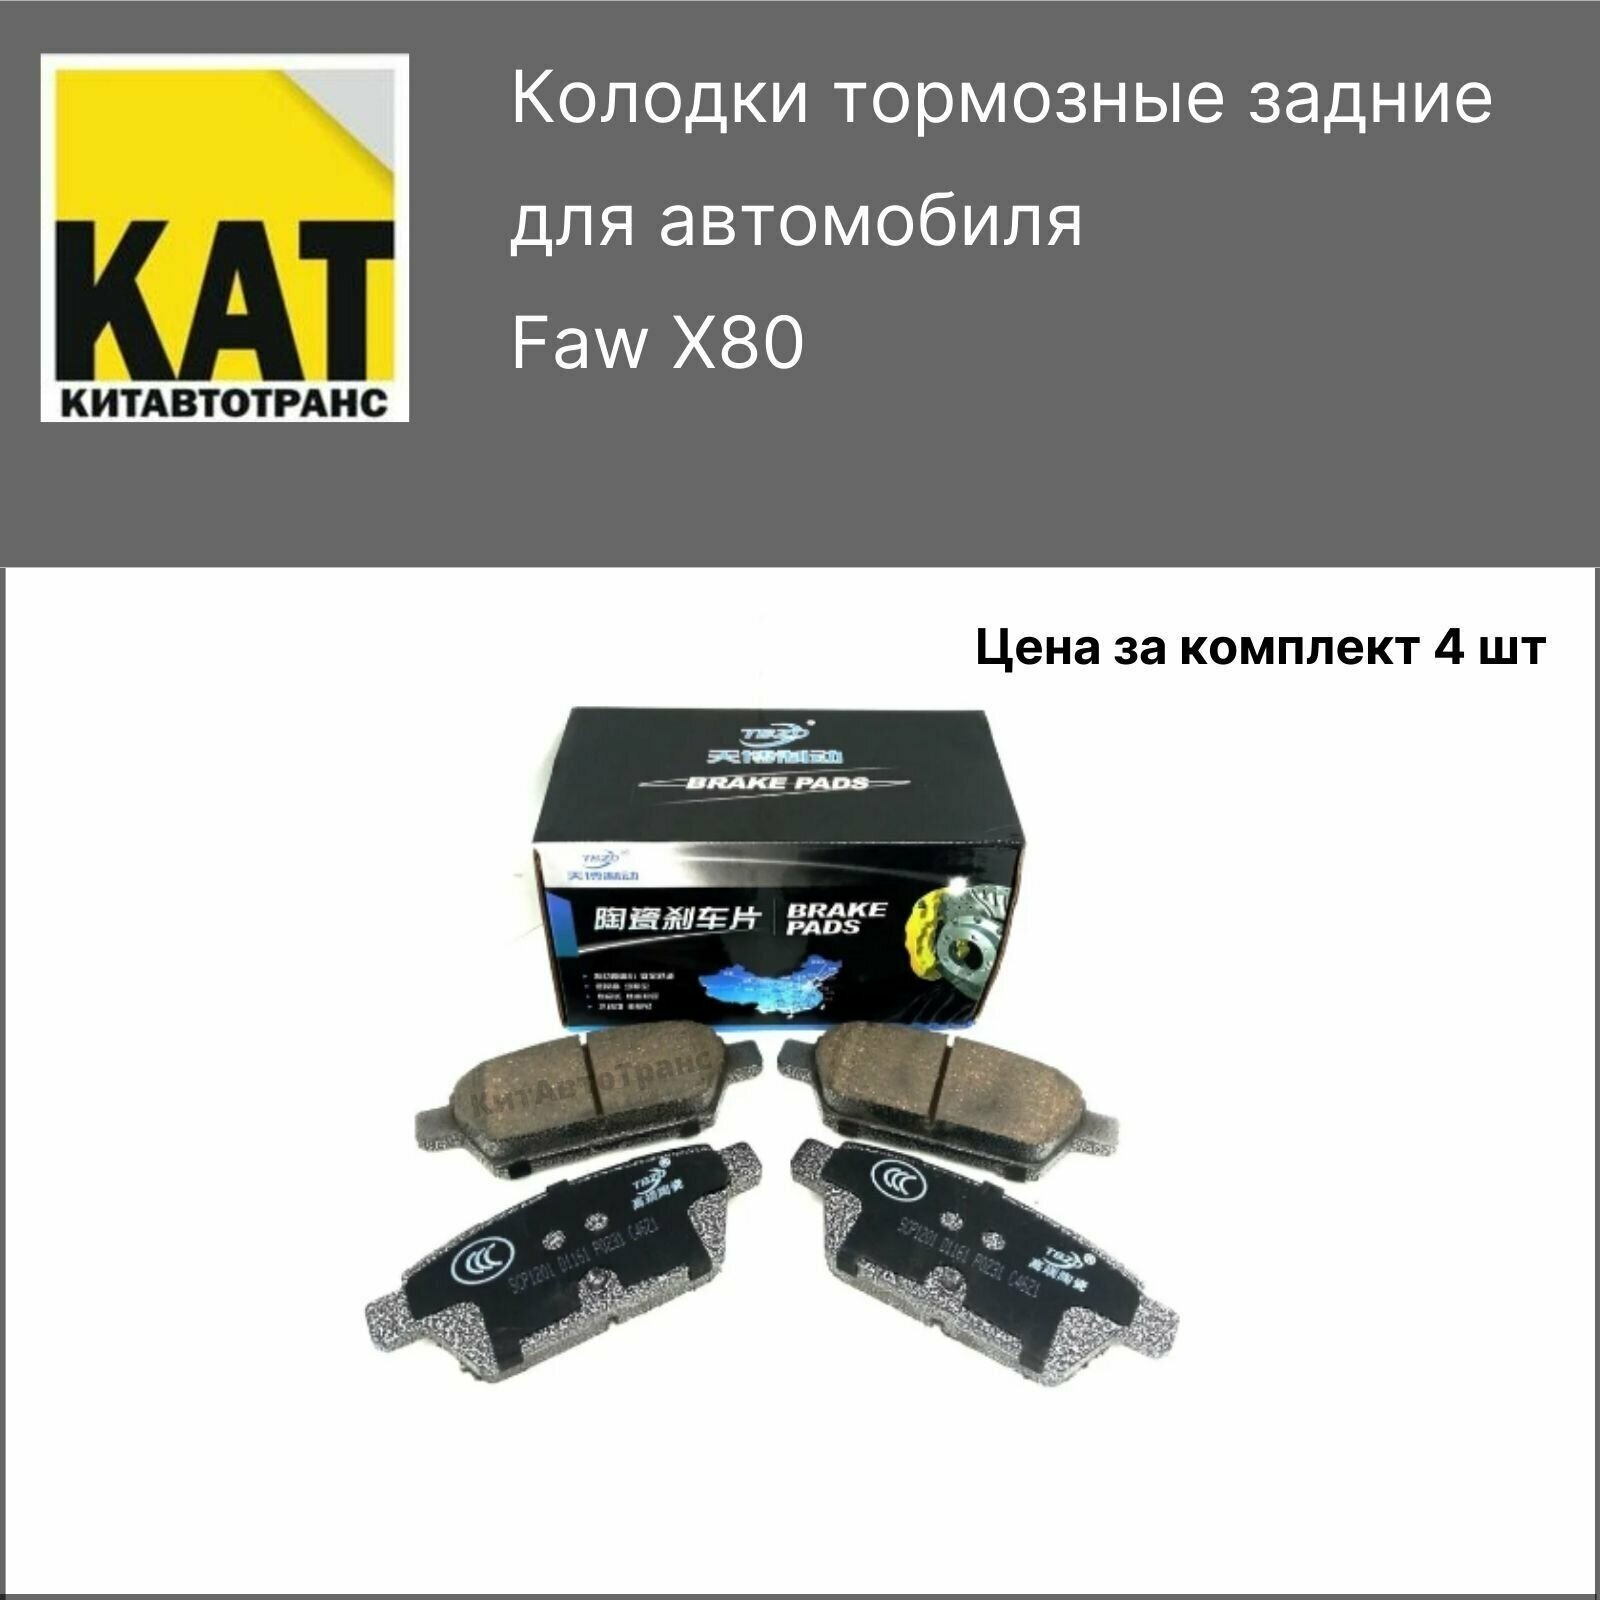 Колодки Фав X80 (FAW x80) тормозные задние